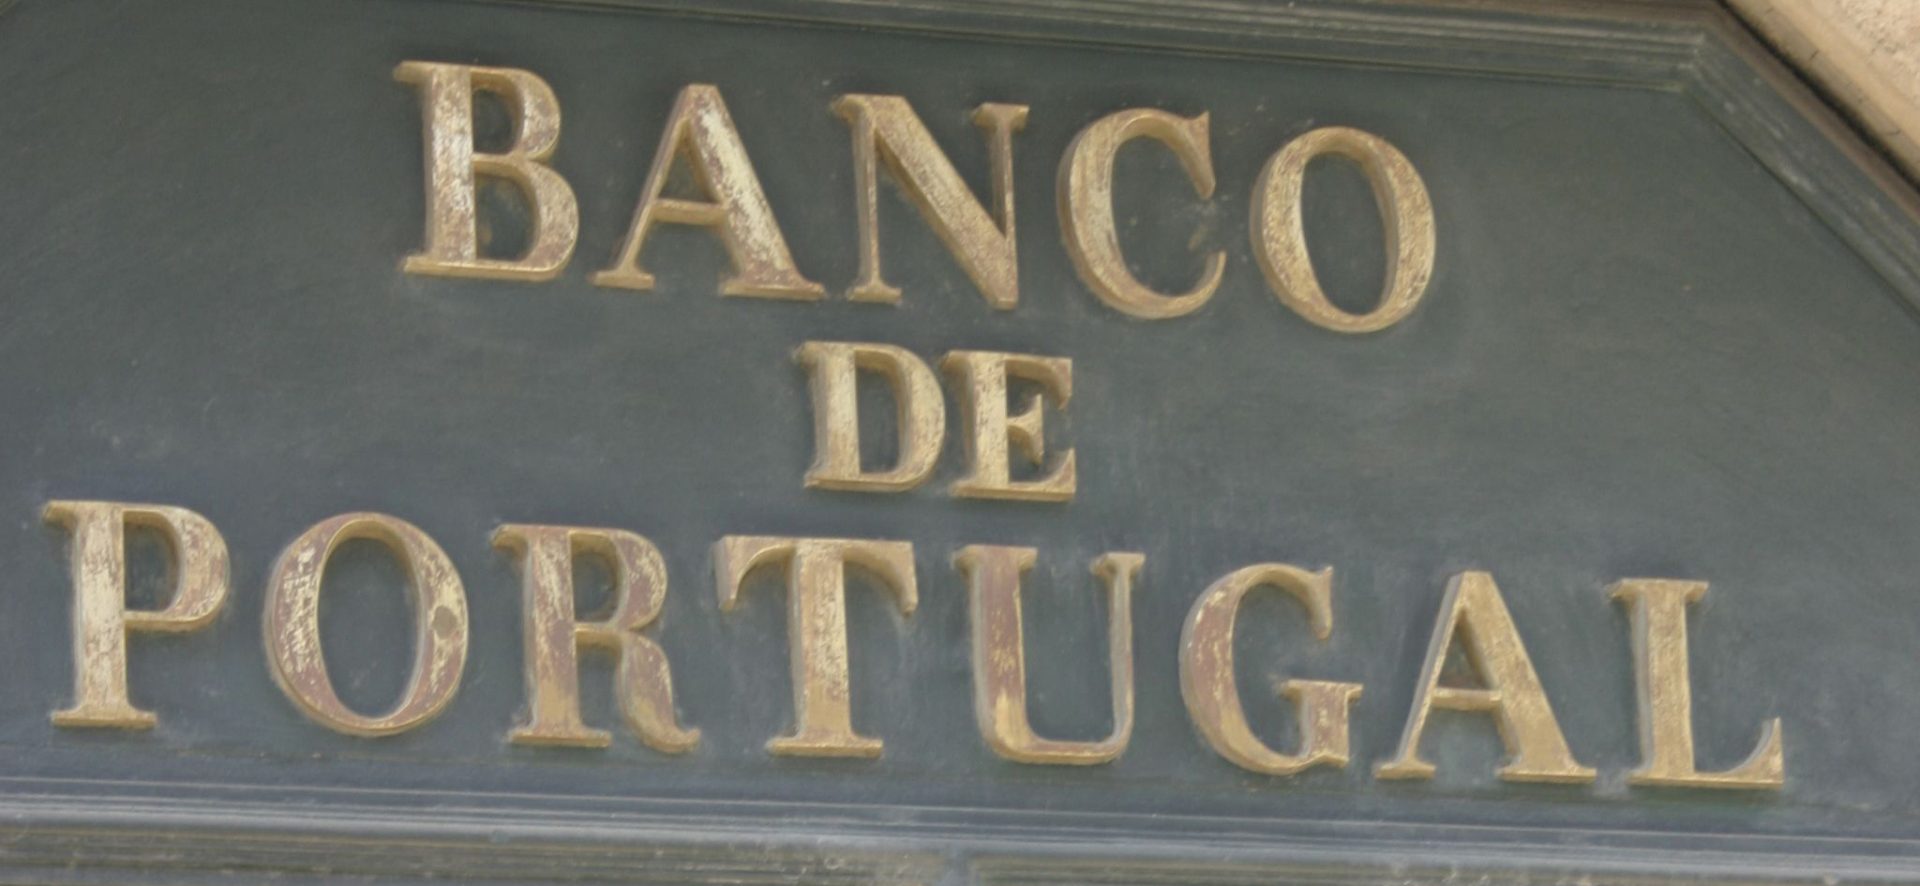 Banco de Portugal não vai transferir responsabilidade do BES para Novo Banco